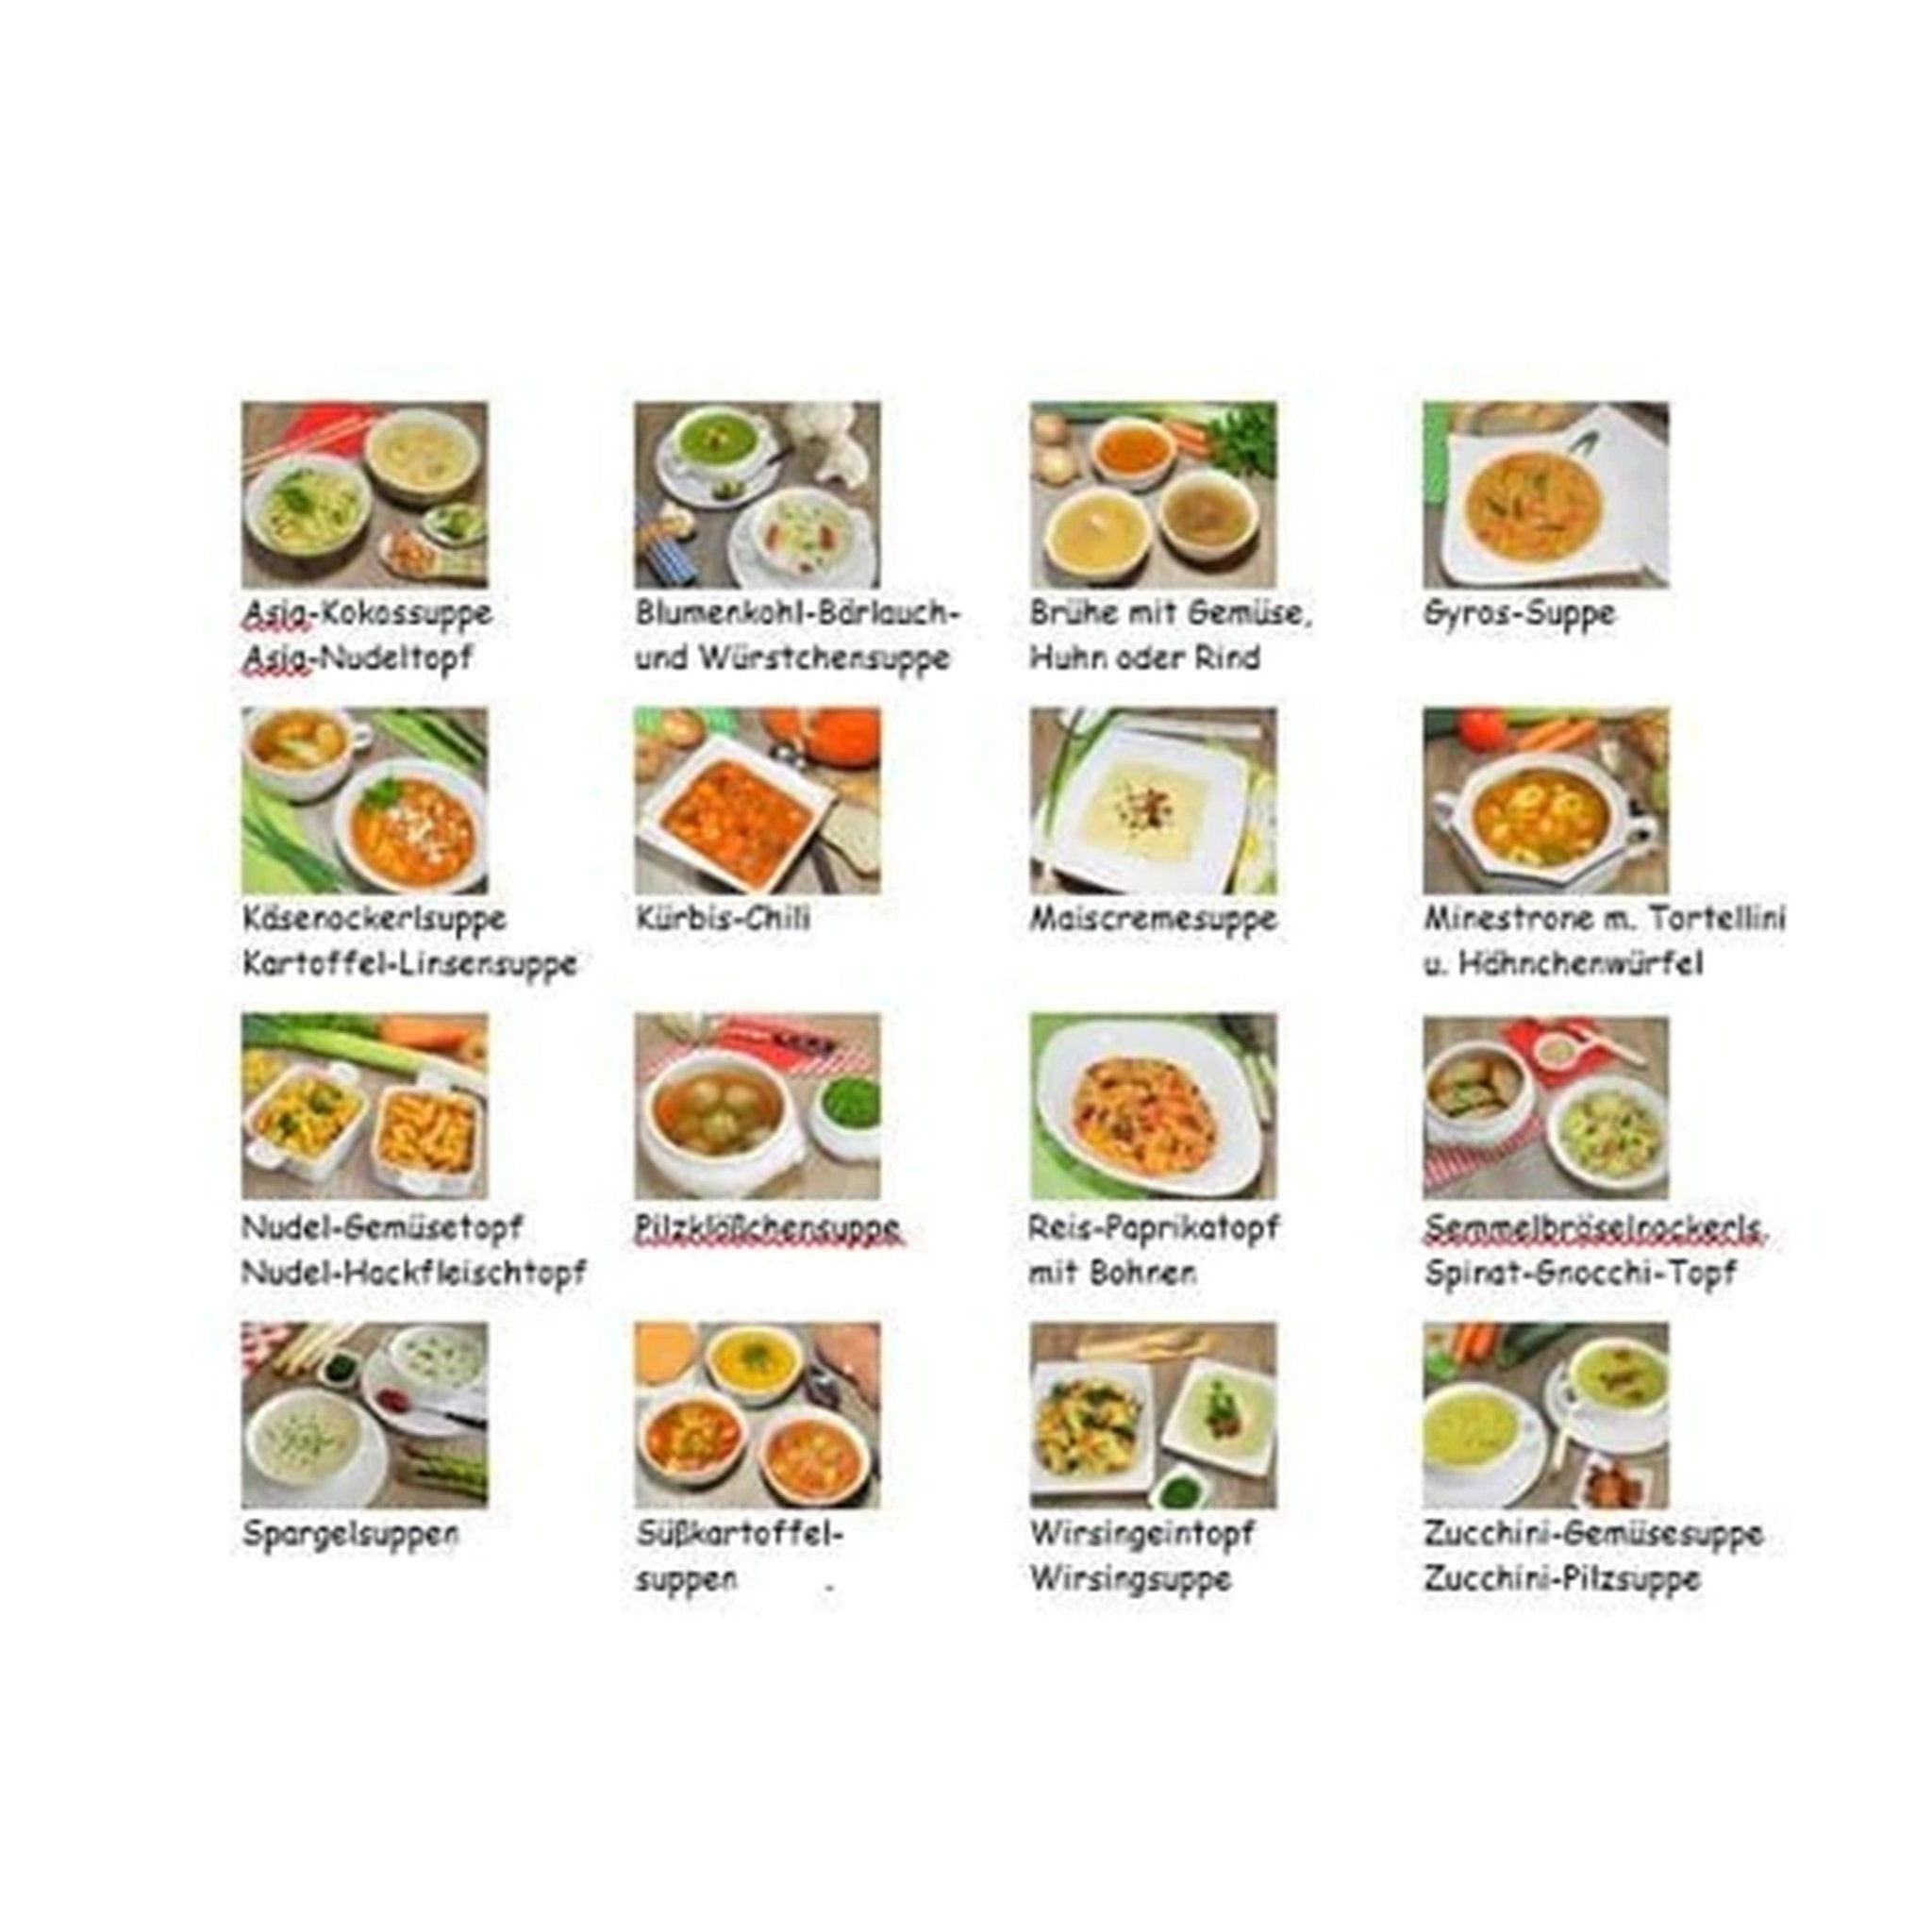 Heißgeliebte Suppen und Eintöpfe | Christine Haas | Kleine Edition - Band 2 - Wundermix GmbH